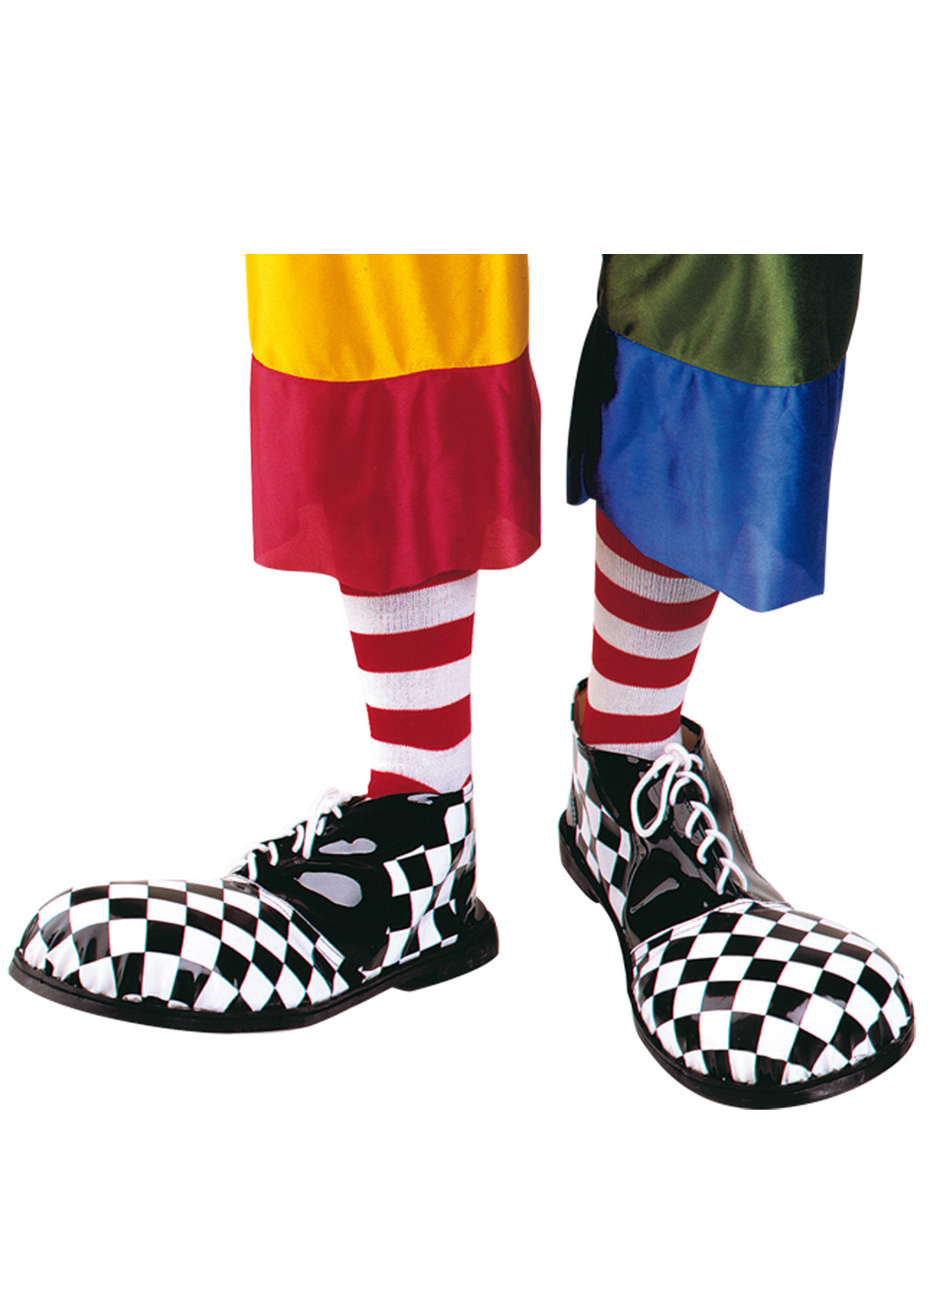 Клоун в больших ботинках